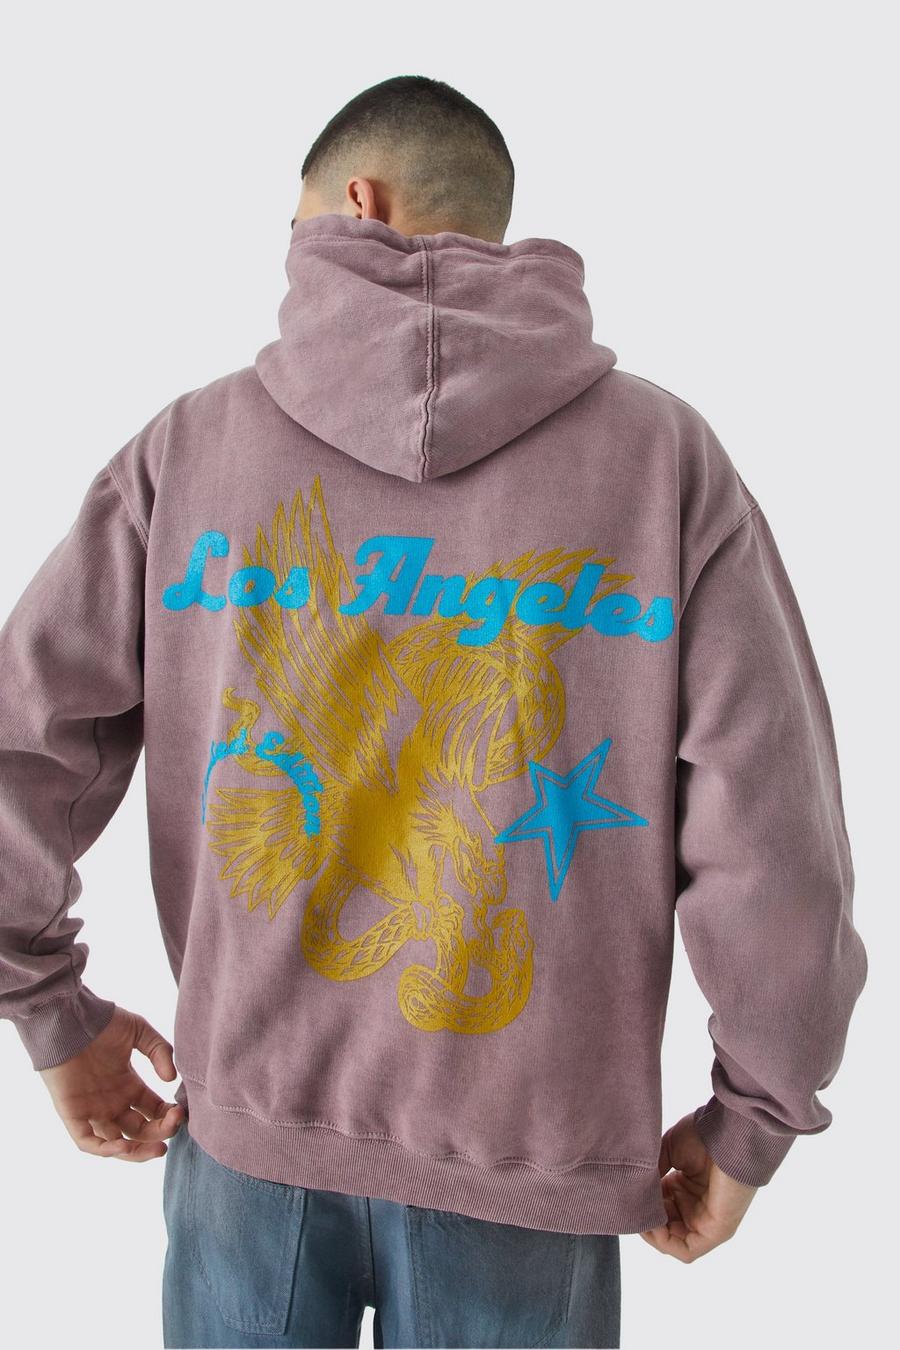 Chocolate Los Angeles Oversize Urblekt hoodie